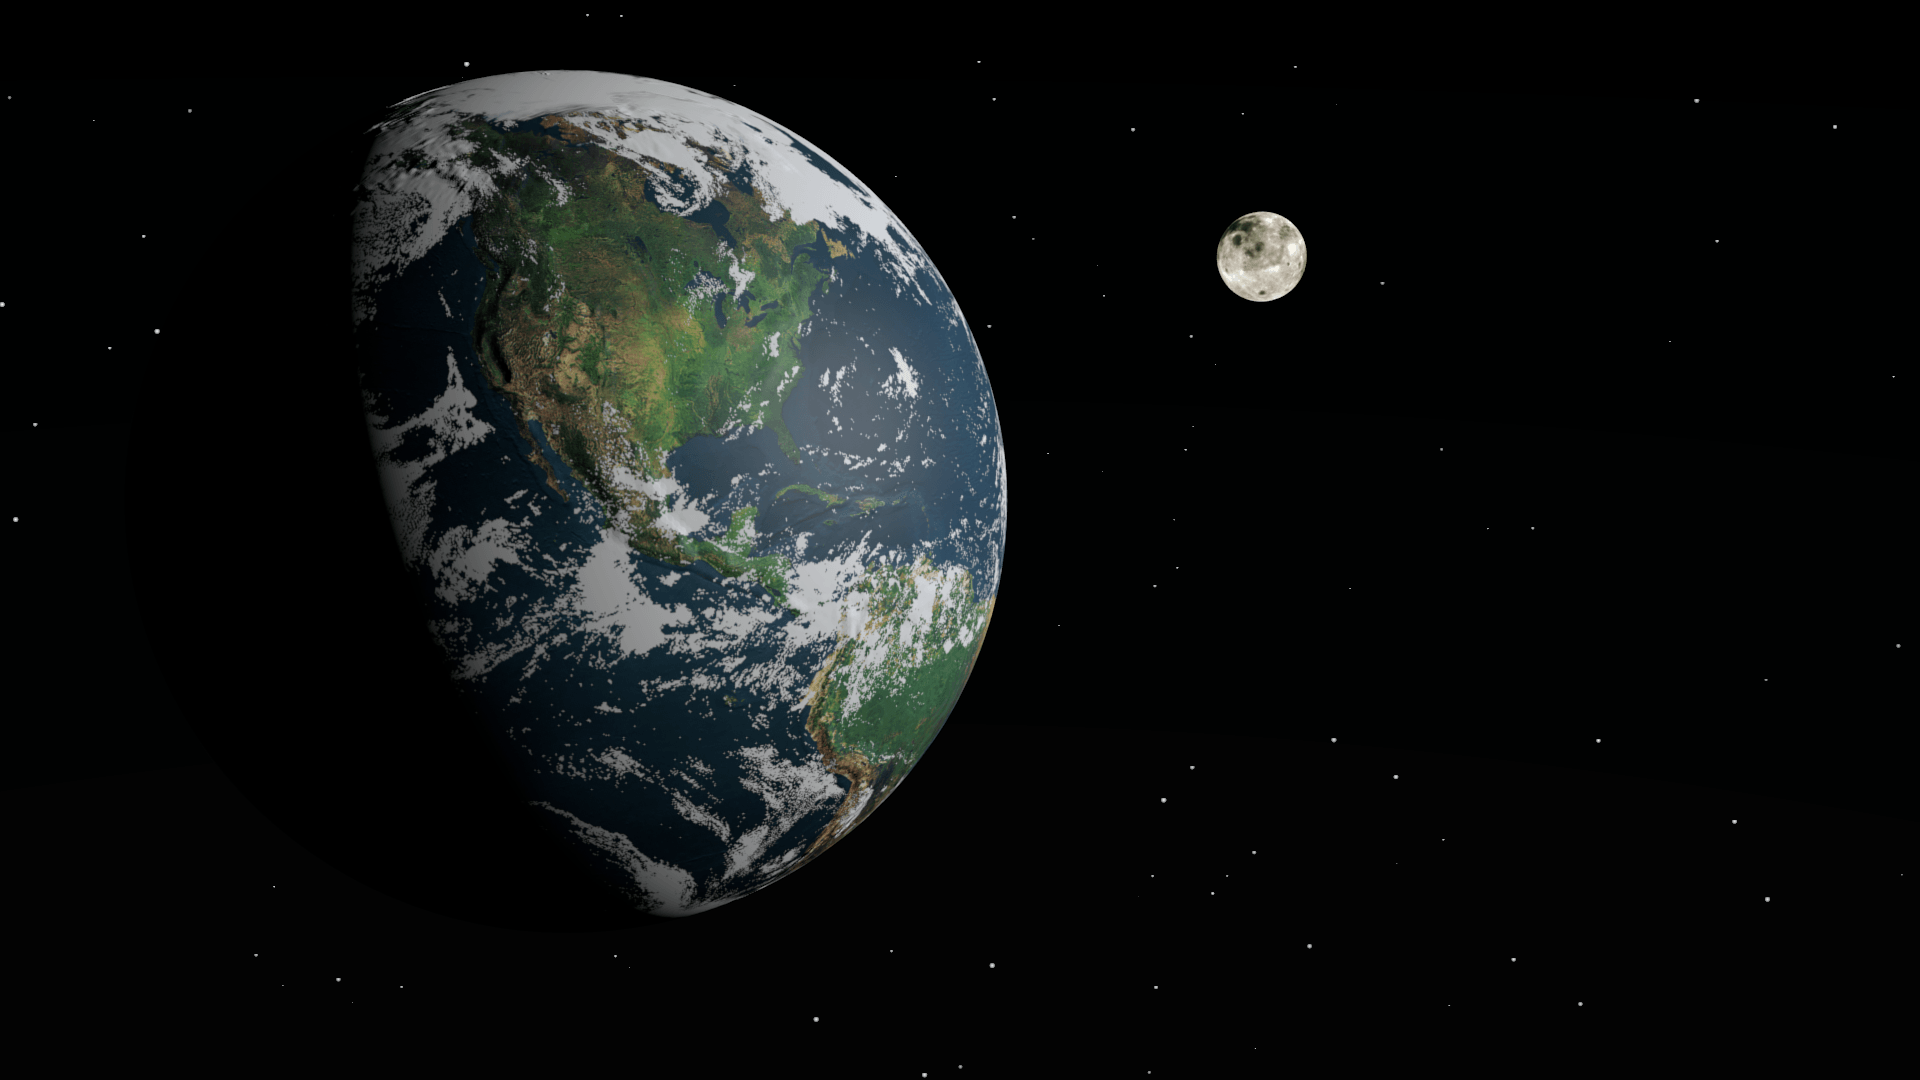 حجم القمر بالنسبة للأرض وبعض المعلومات عنهما